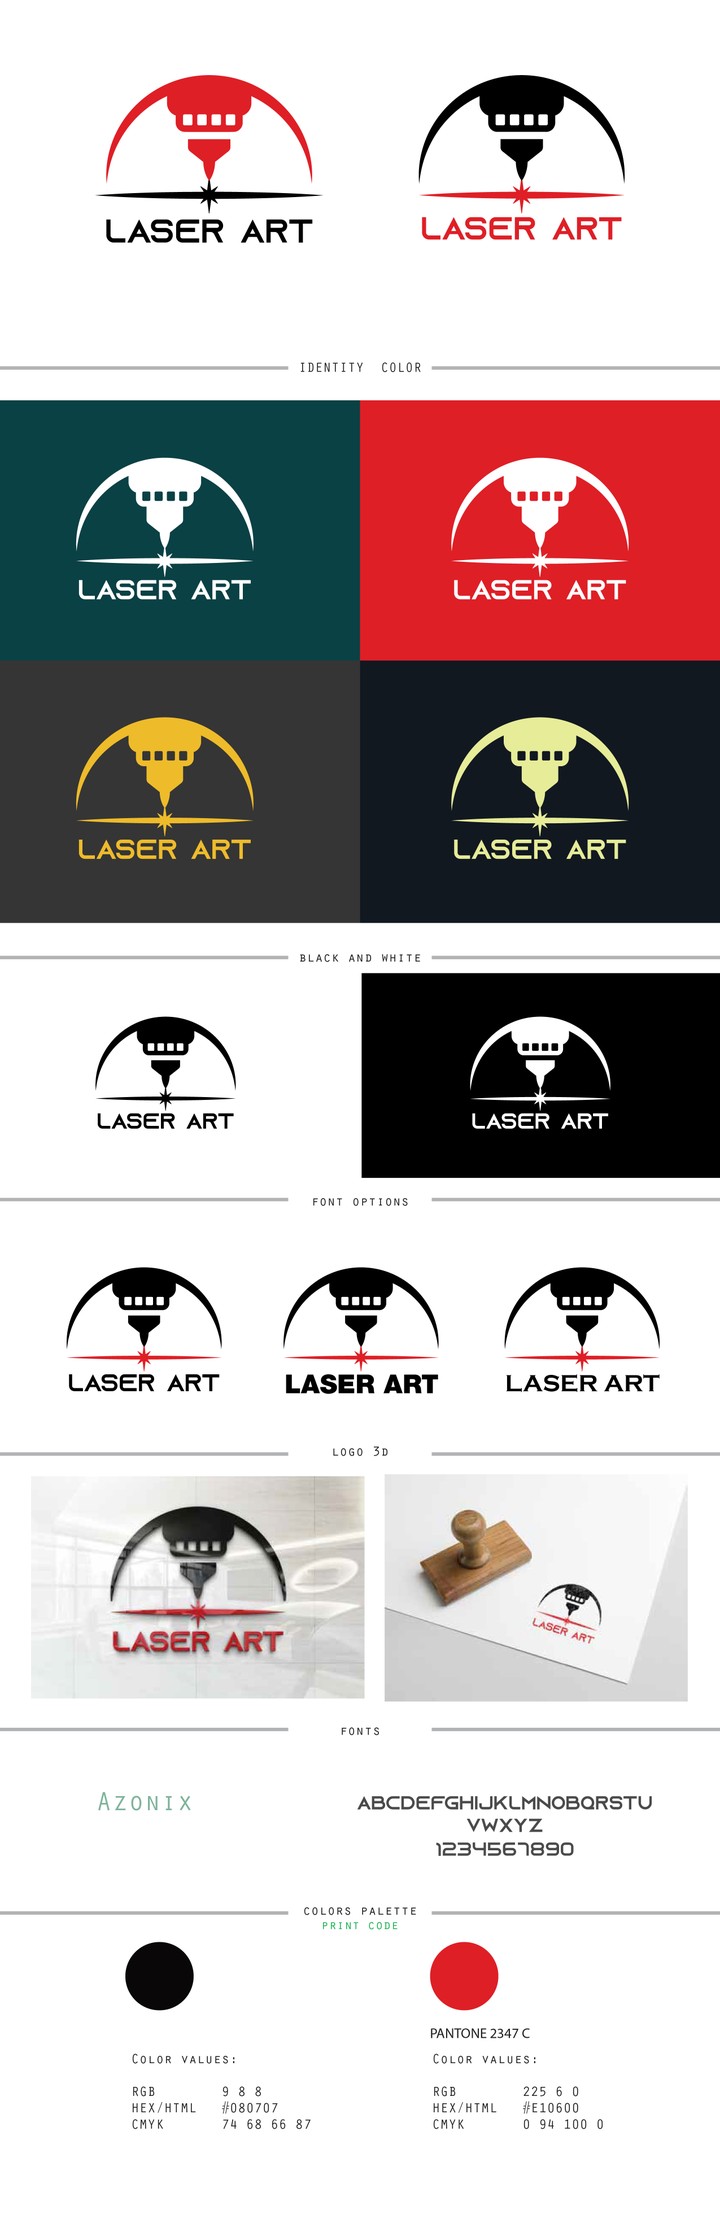 Logo Design For Laser Art